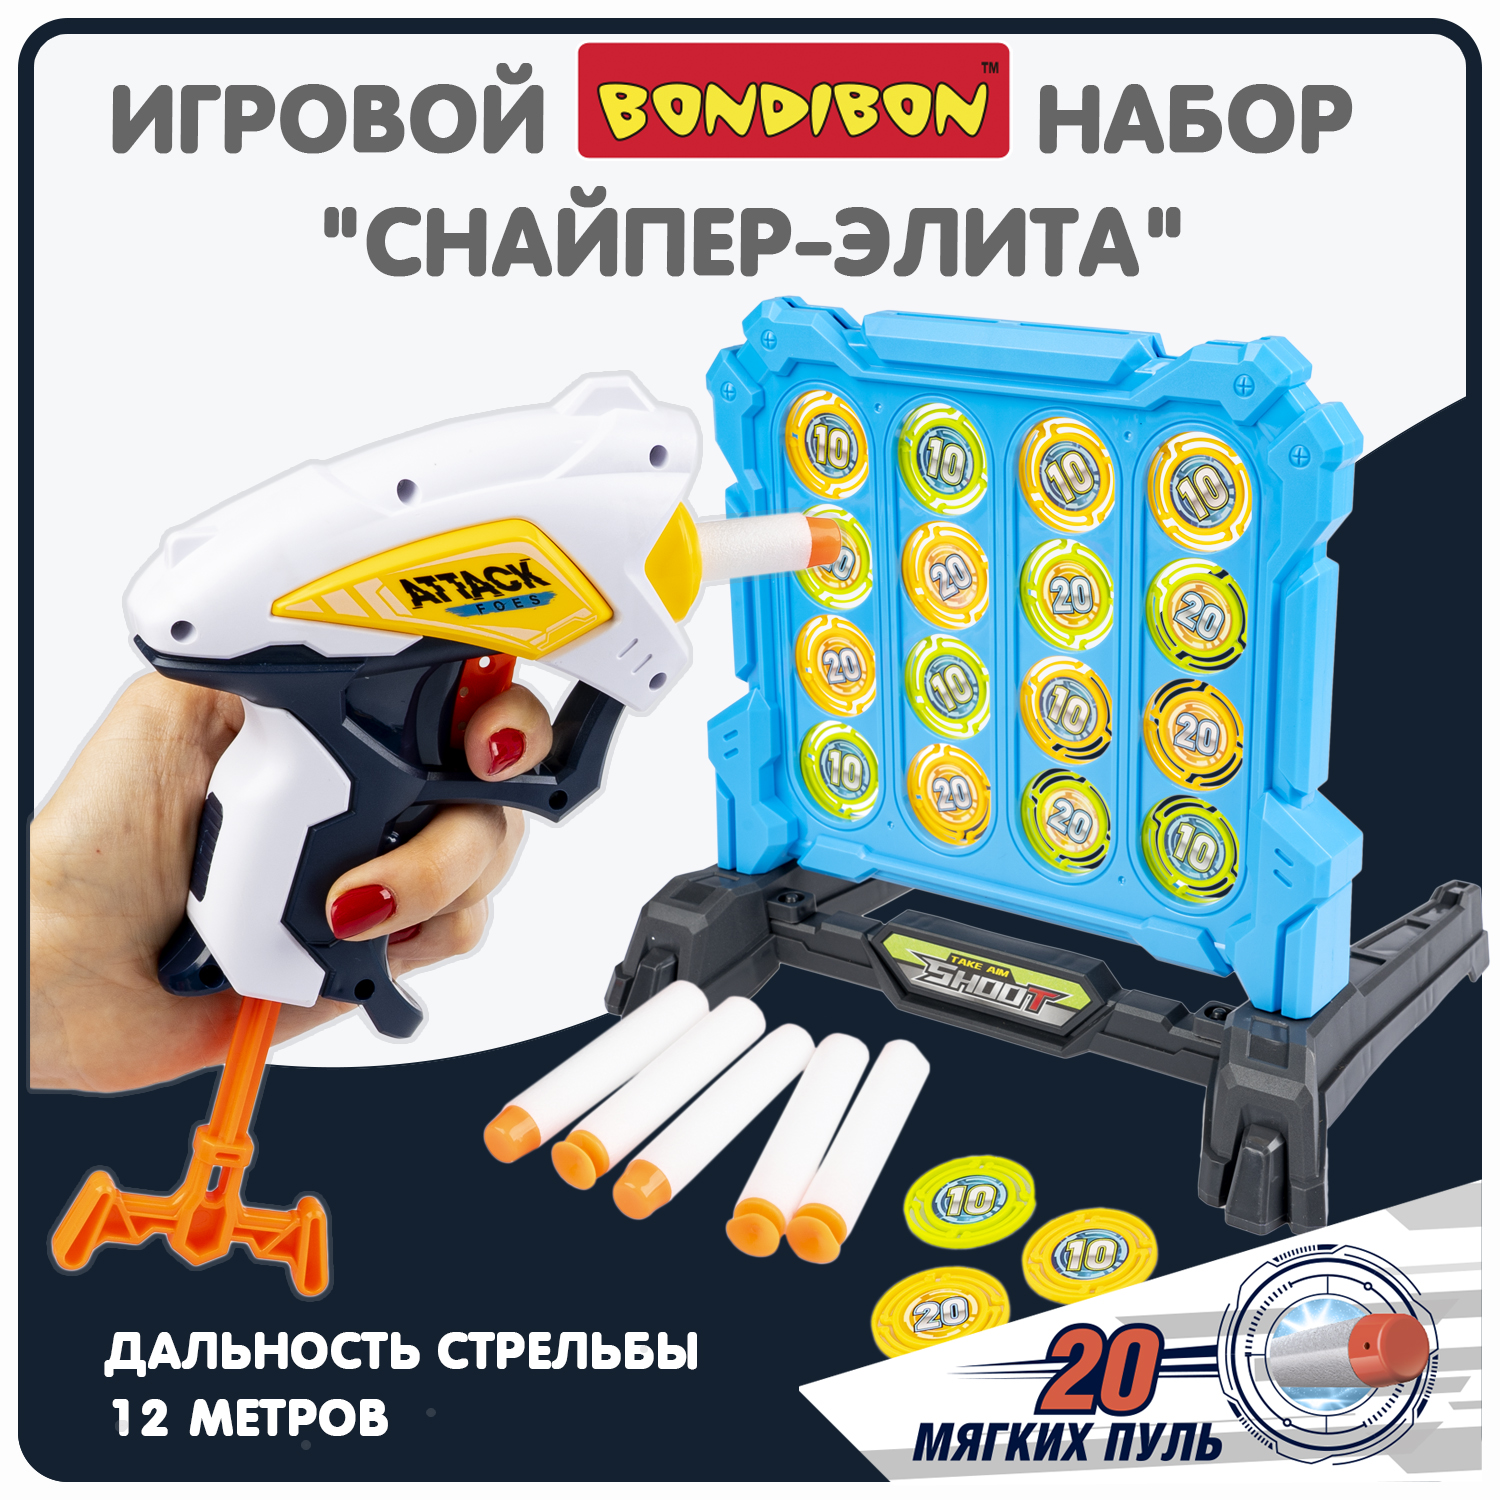 Набор игровой Bondibon CНАЙПЕР-элита пистолет, мишень, мягкие пули / ВВ6064(игрушка)